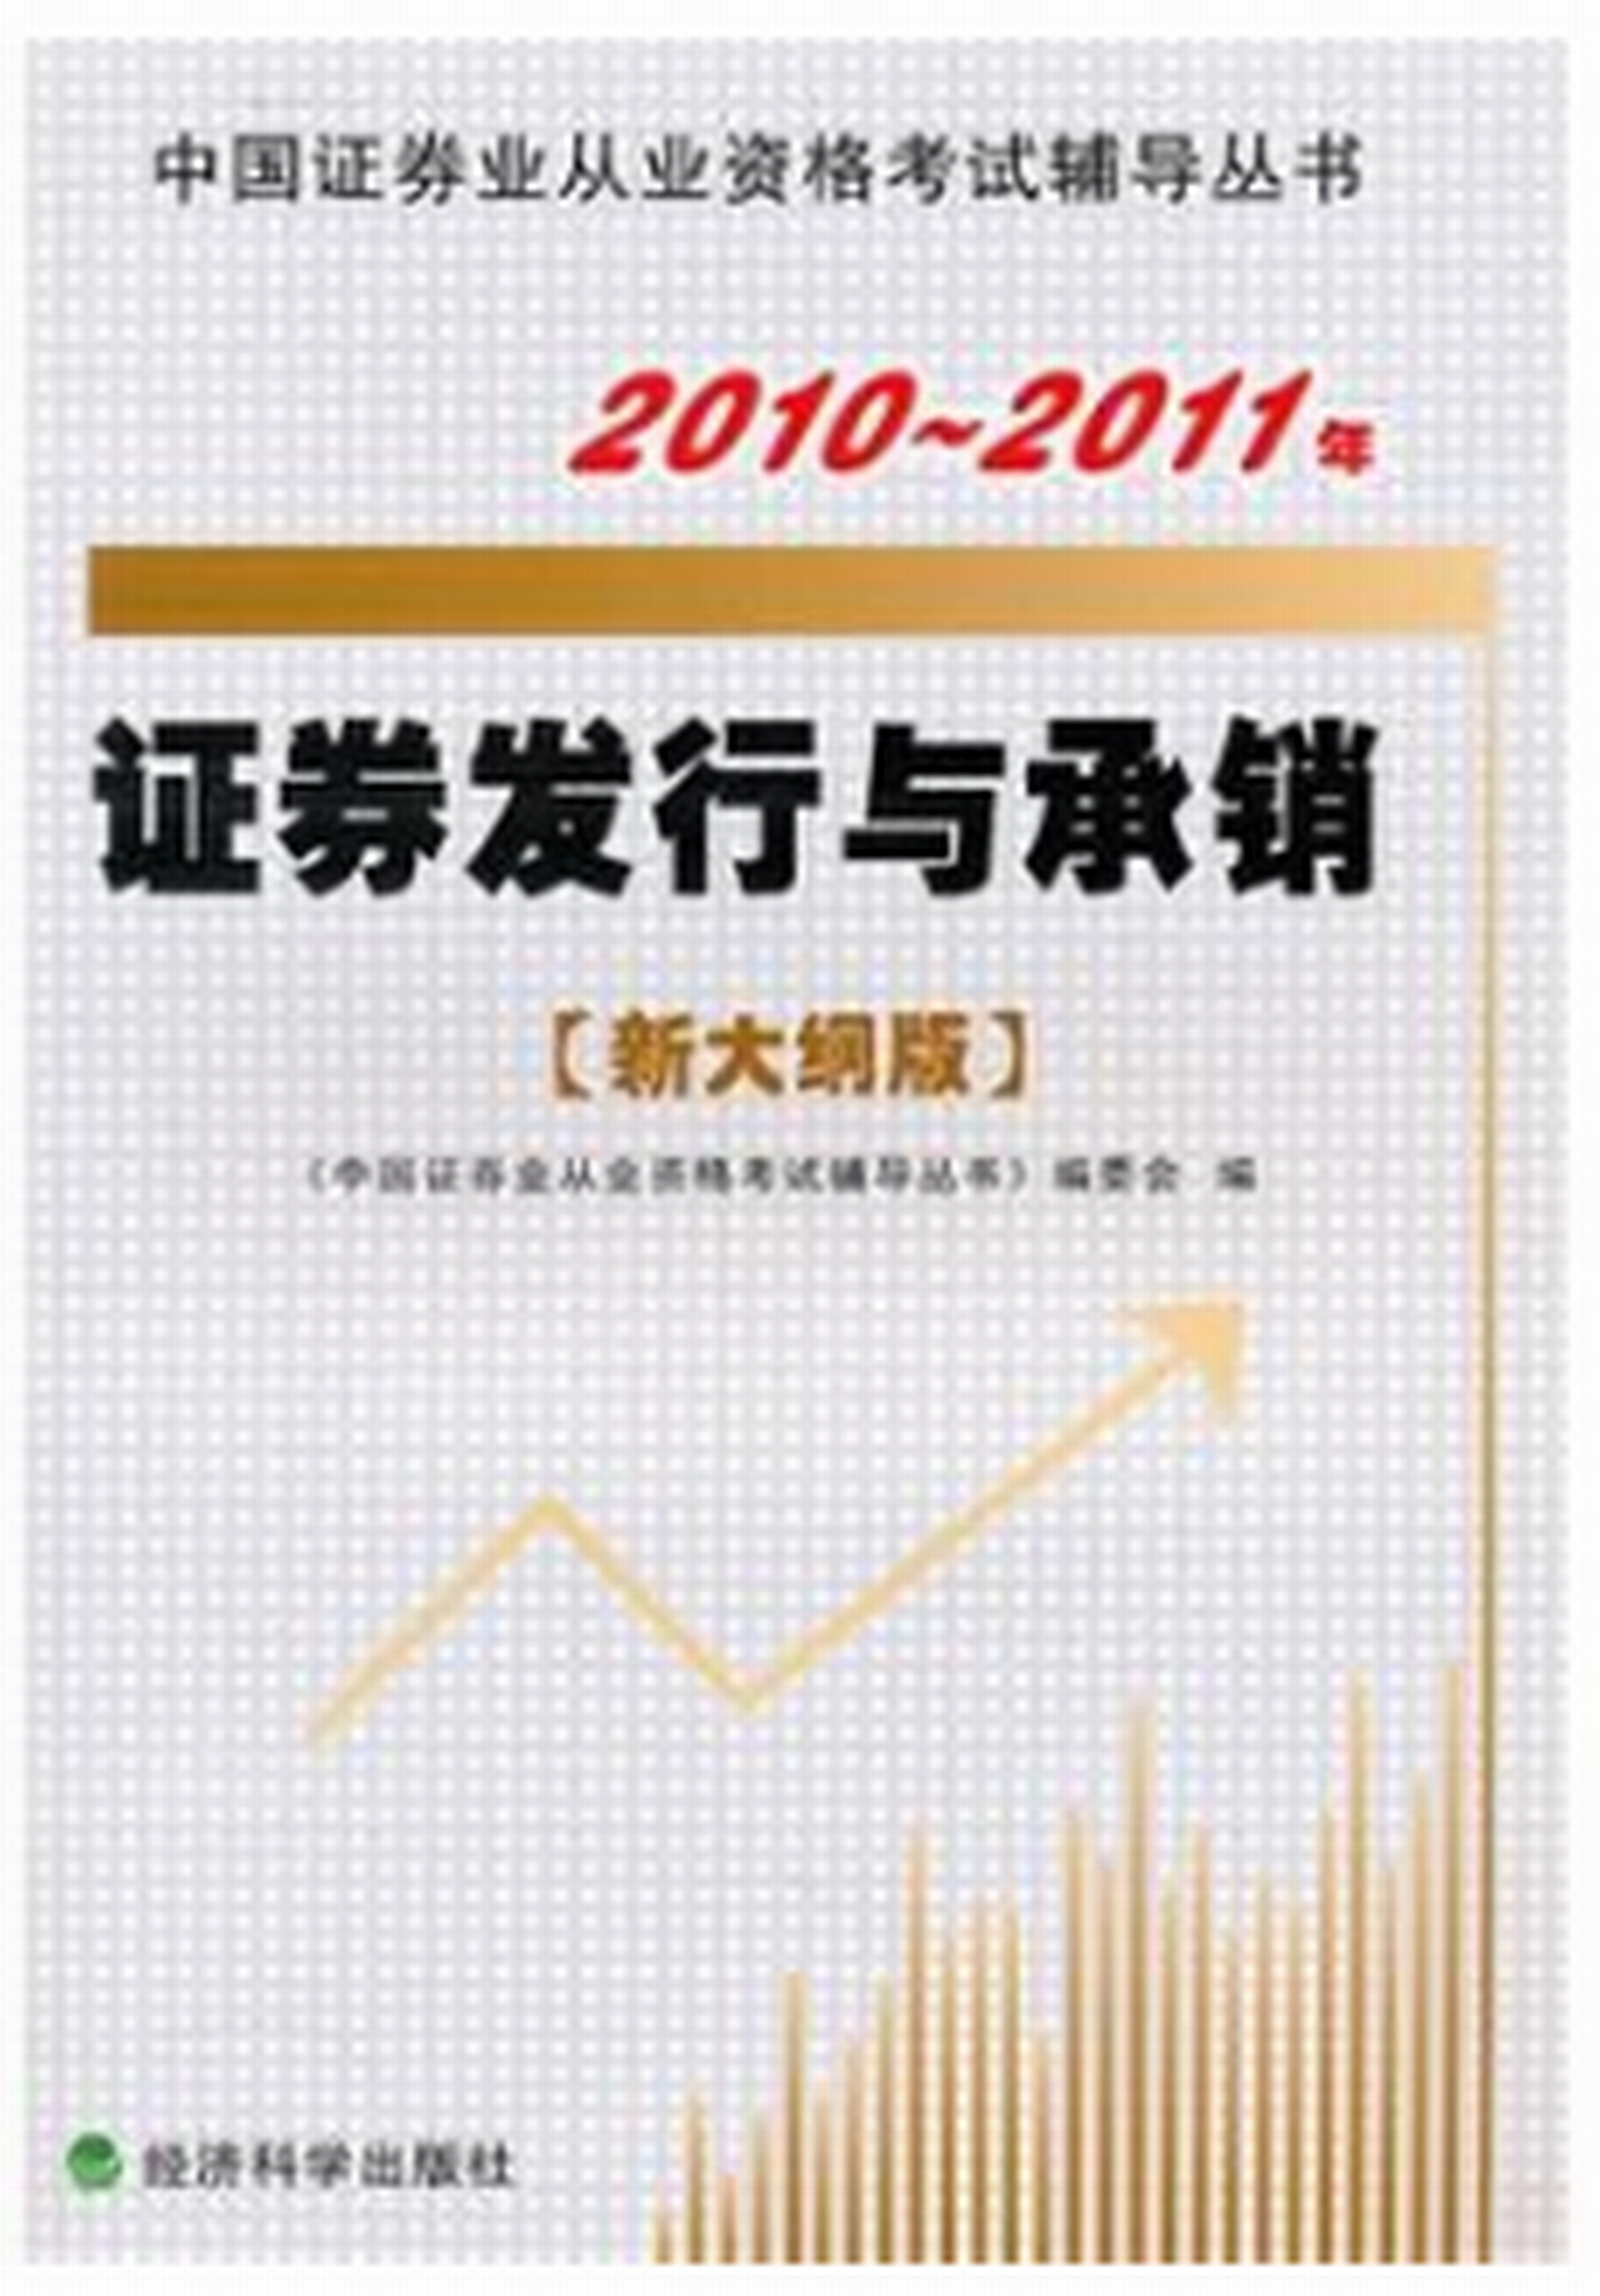 2010-2011年證券發行與承銷